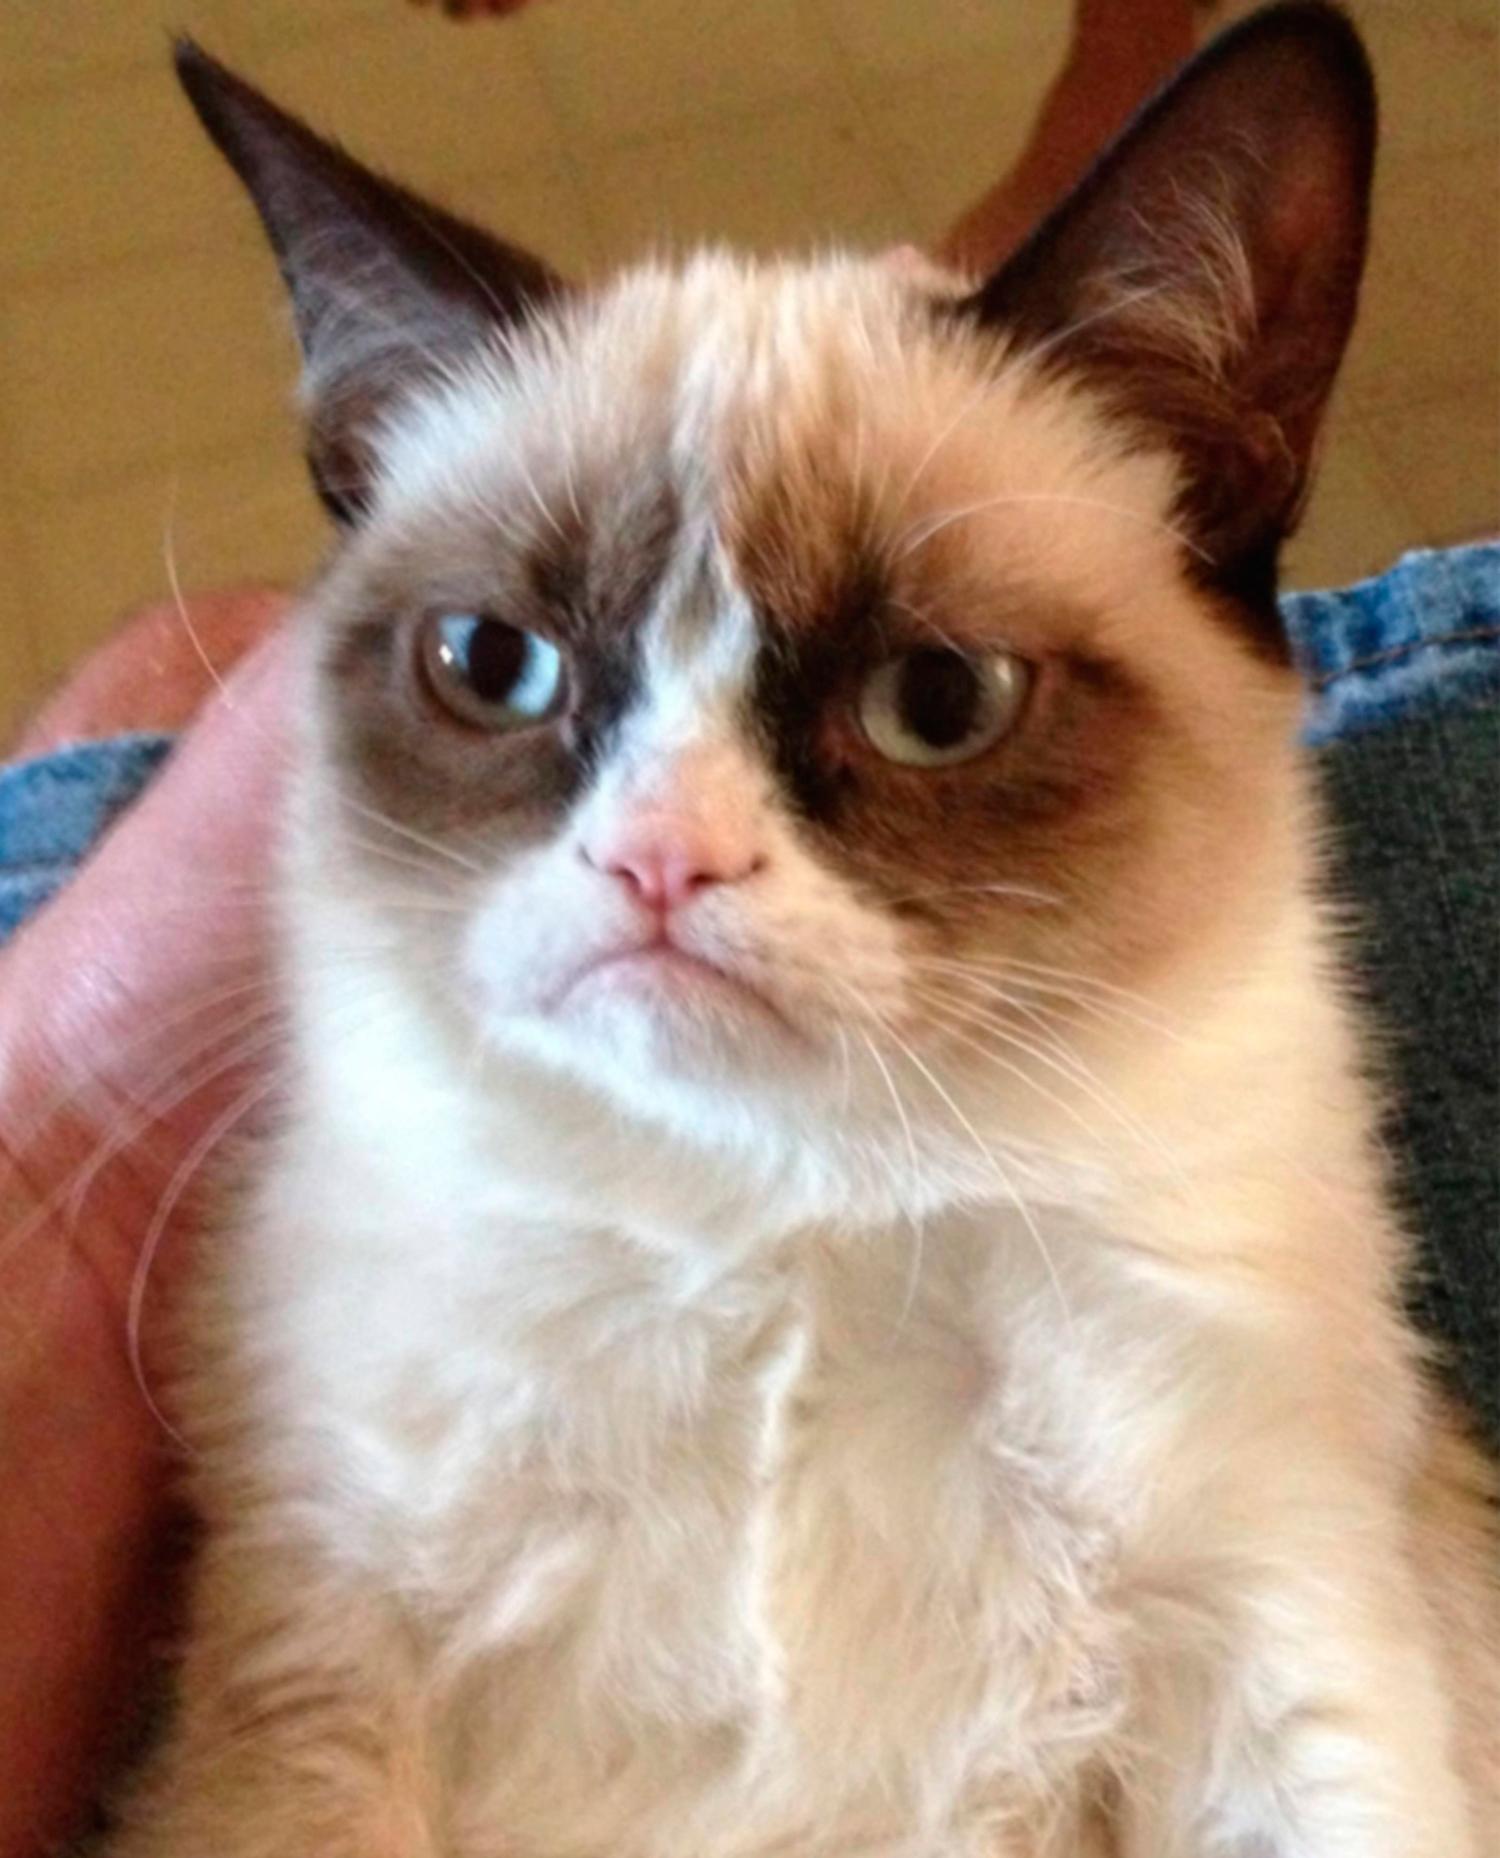 ”Grumpy cat” eller ”Tardar Sauce” som den heter på riktigt.